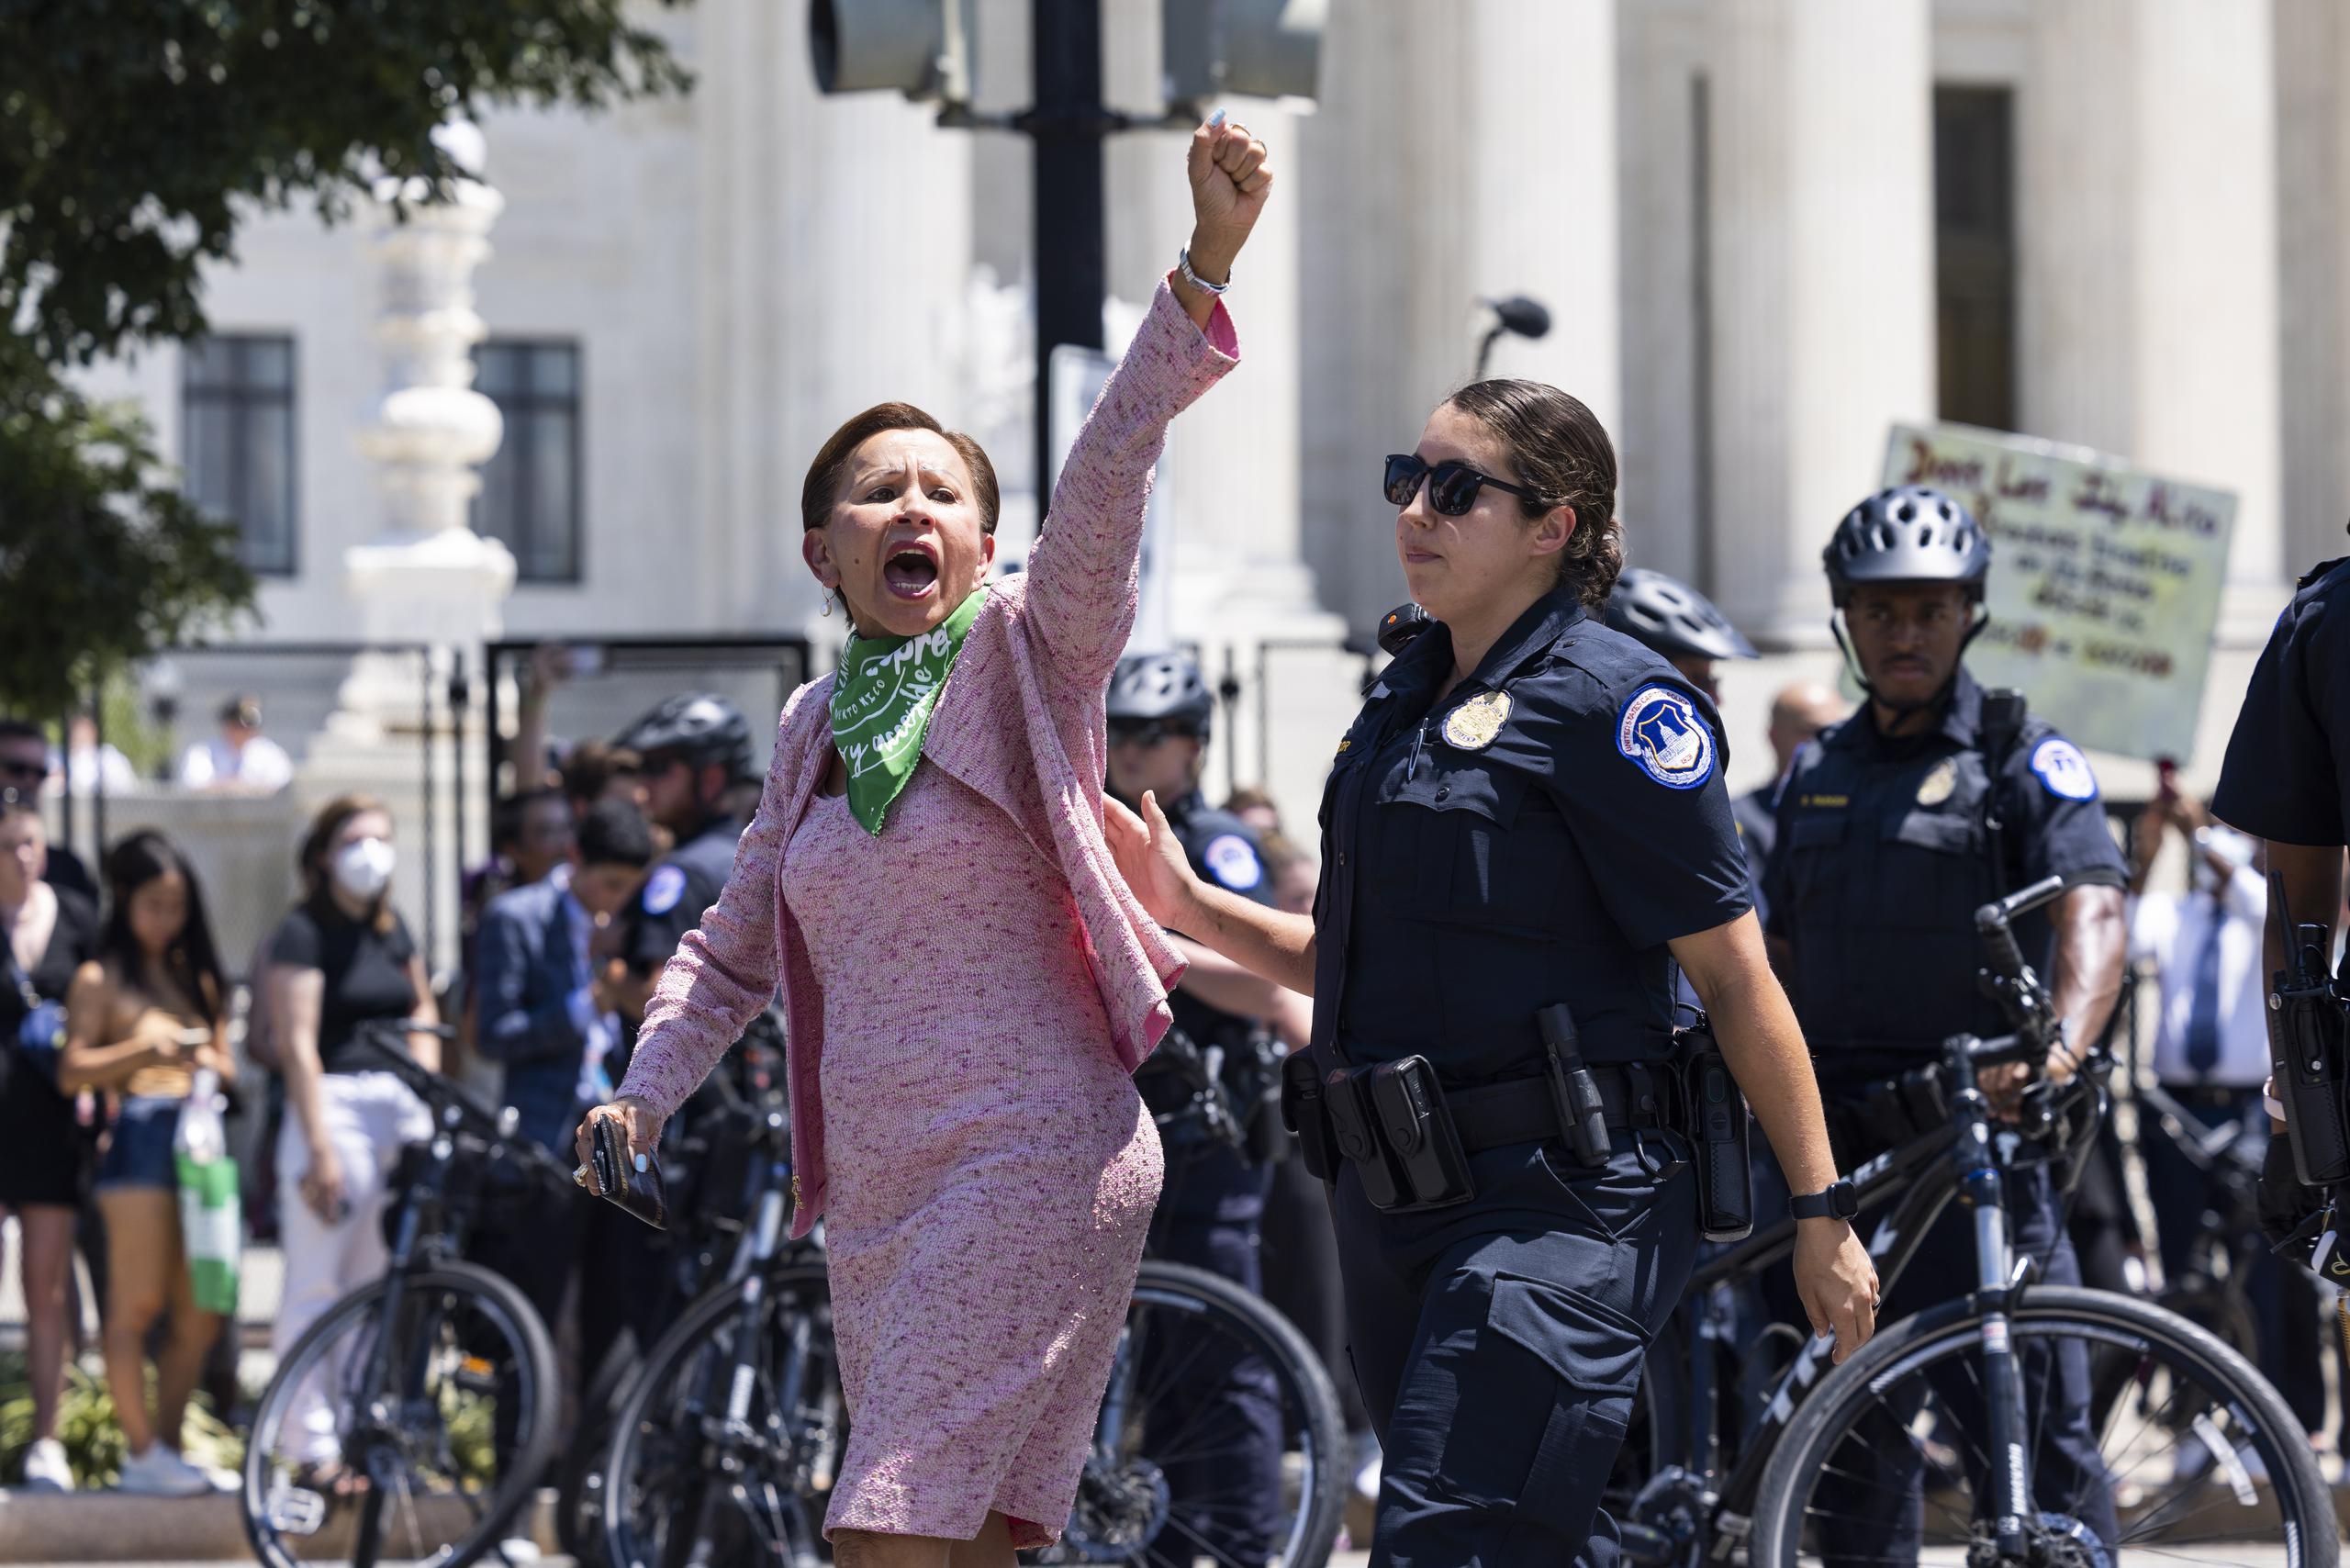 La congresista demócrata Nydia Velázquez es detenida frente a la Corte Suprema mientras protestaba contra la reciente anulación de la sentencia de 1973 en el caso "Roe contra Wade". EFE/EPA/JIM LO SCALZO
